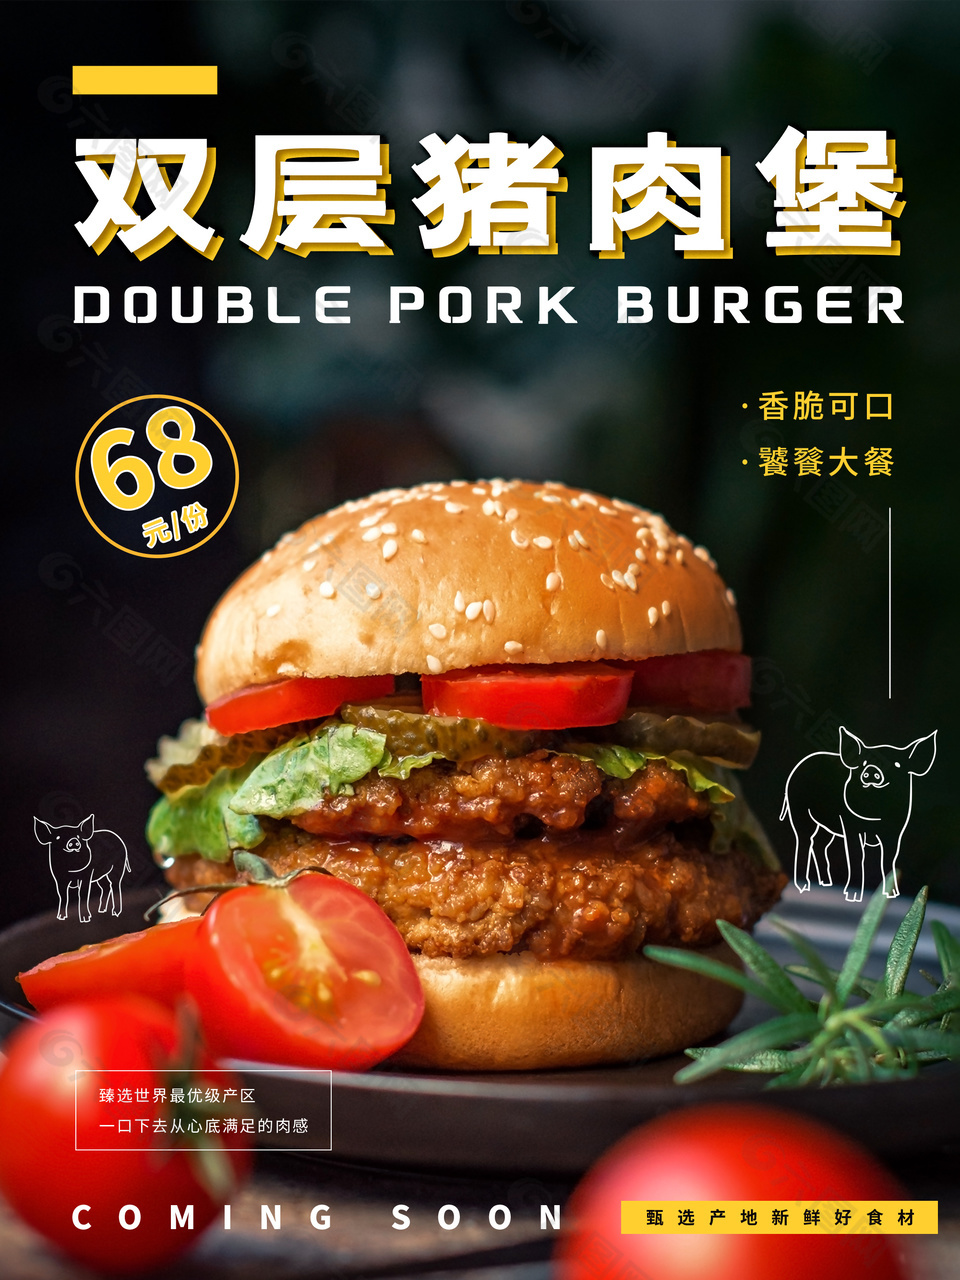 双层猪肉包美味促销海报